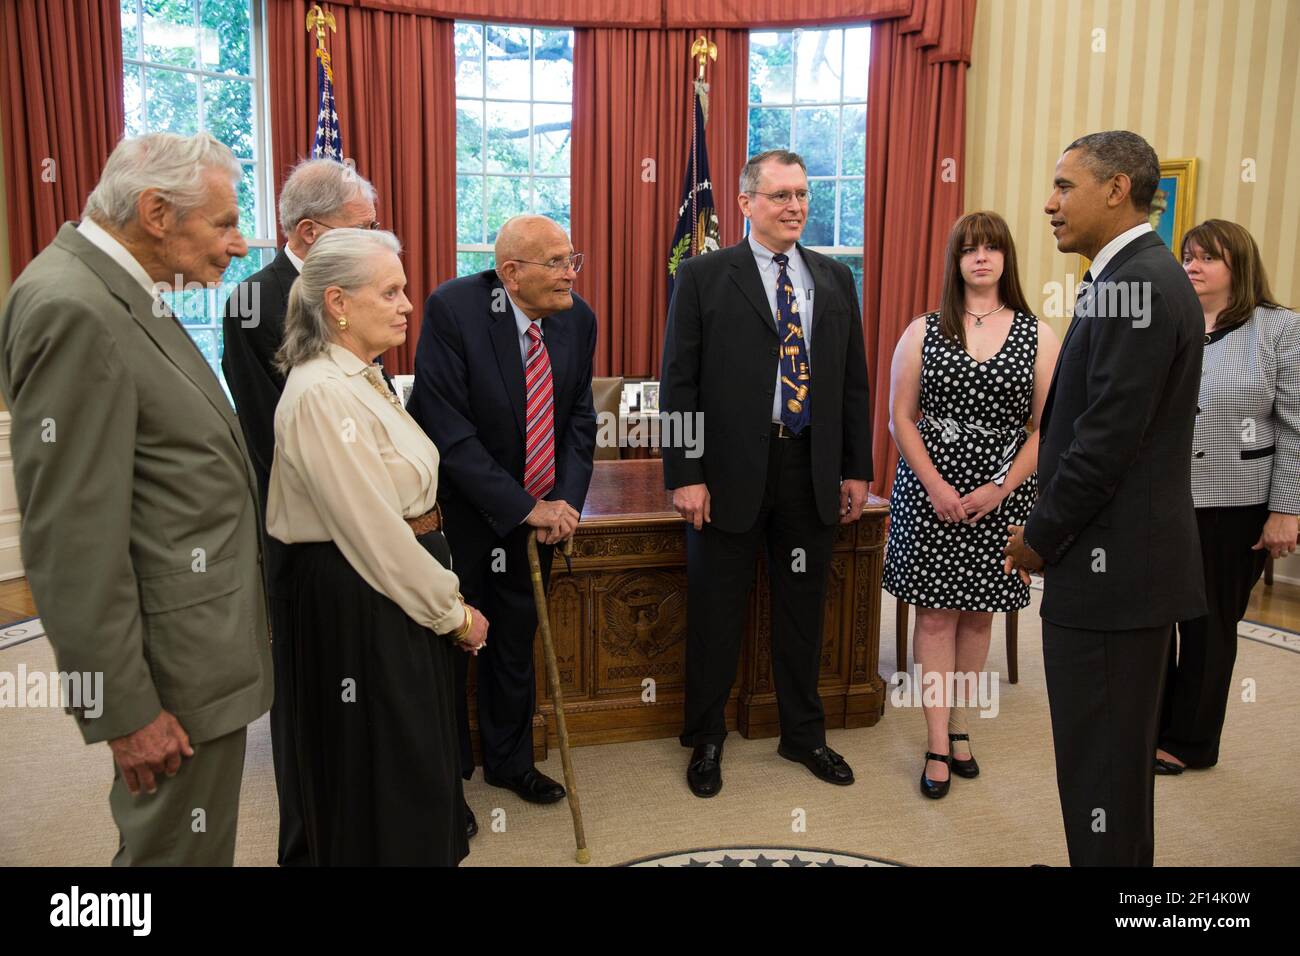 El presidente Barack Obama habla con el representante John Dingell D-Mich junto con miembros de su familia en la oficina Oval el 13 2013 de junio. El representante Dingell es el Miembro que más ha servido en la historia del Congreso de los Estados Unidos. Foto de stock